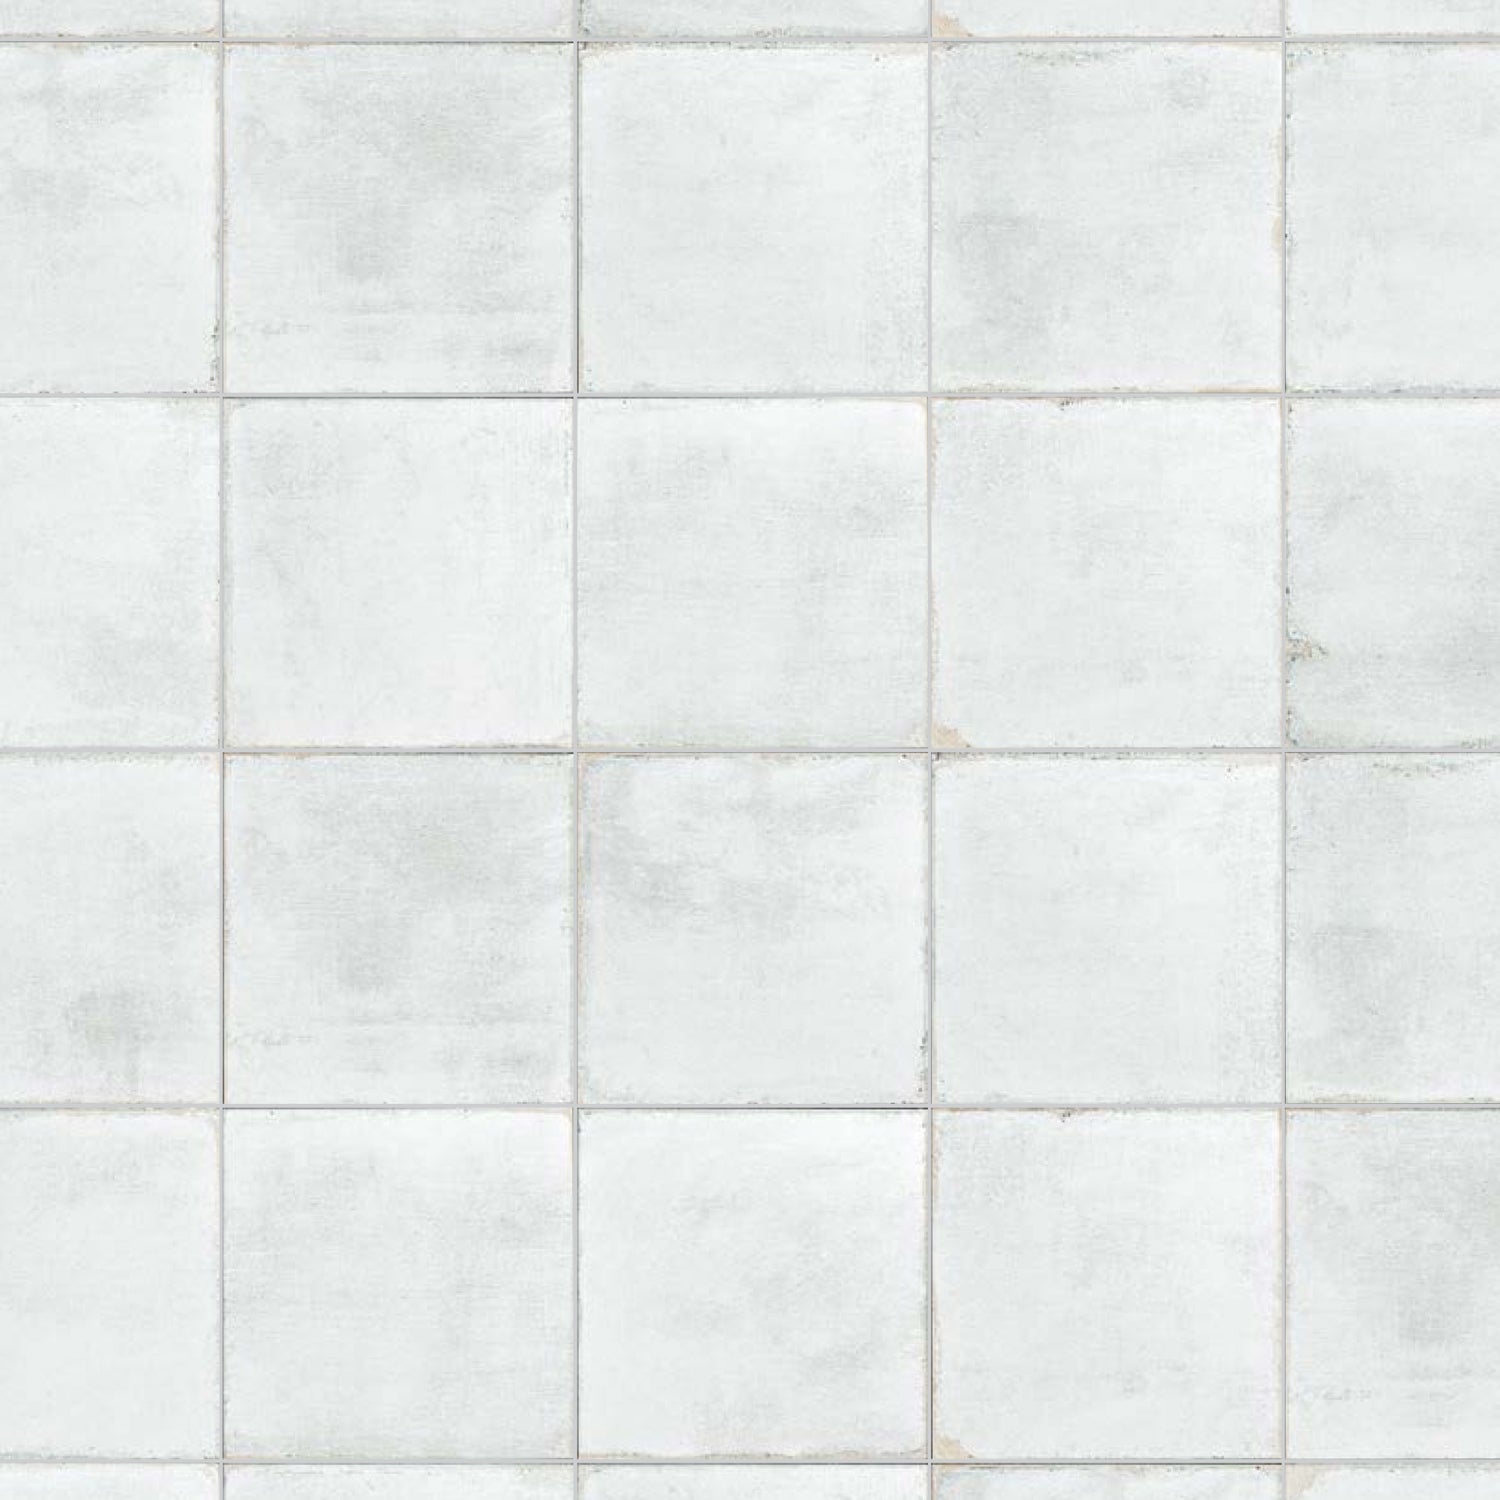 Topcu - Barcelona 6 in. x 6 in. Glazed Porcelain Tile  - All White